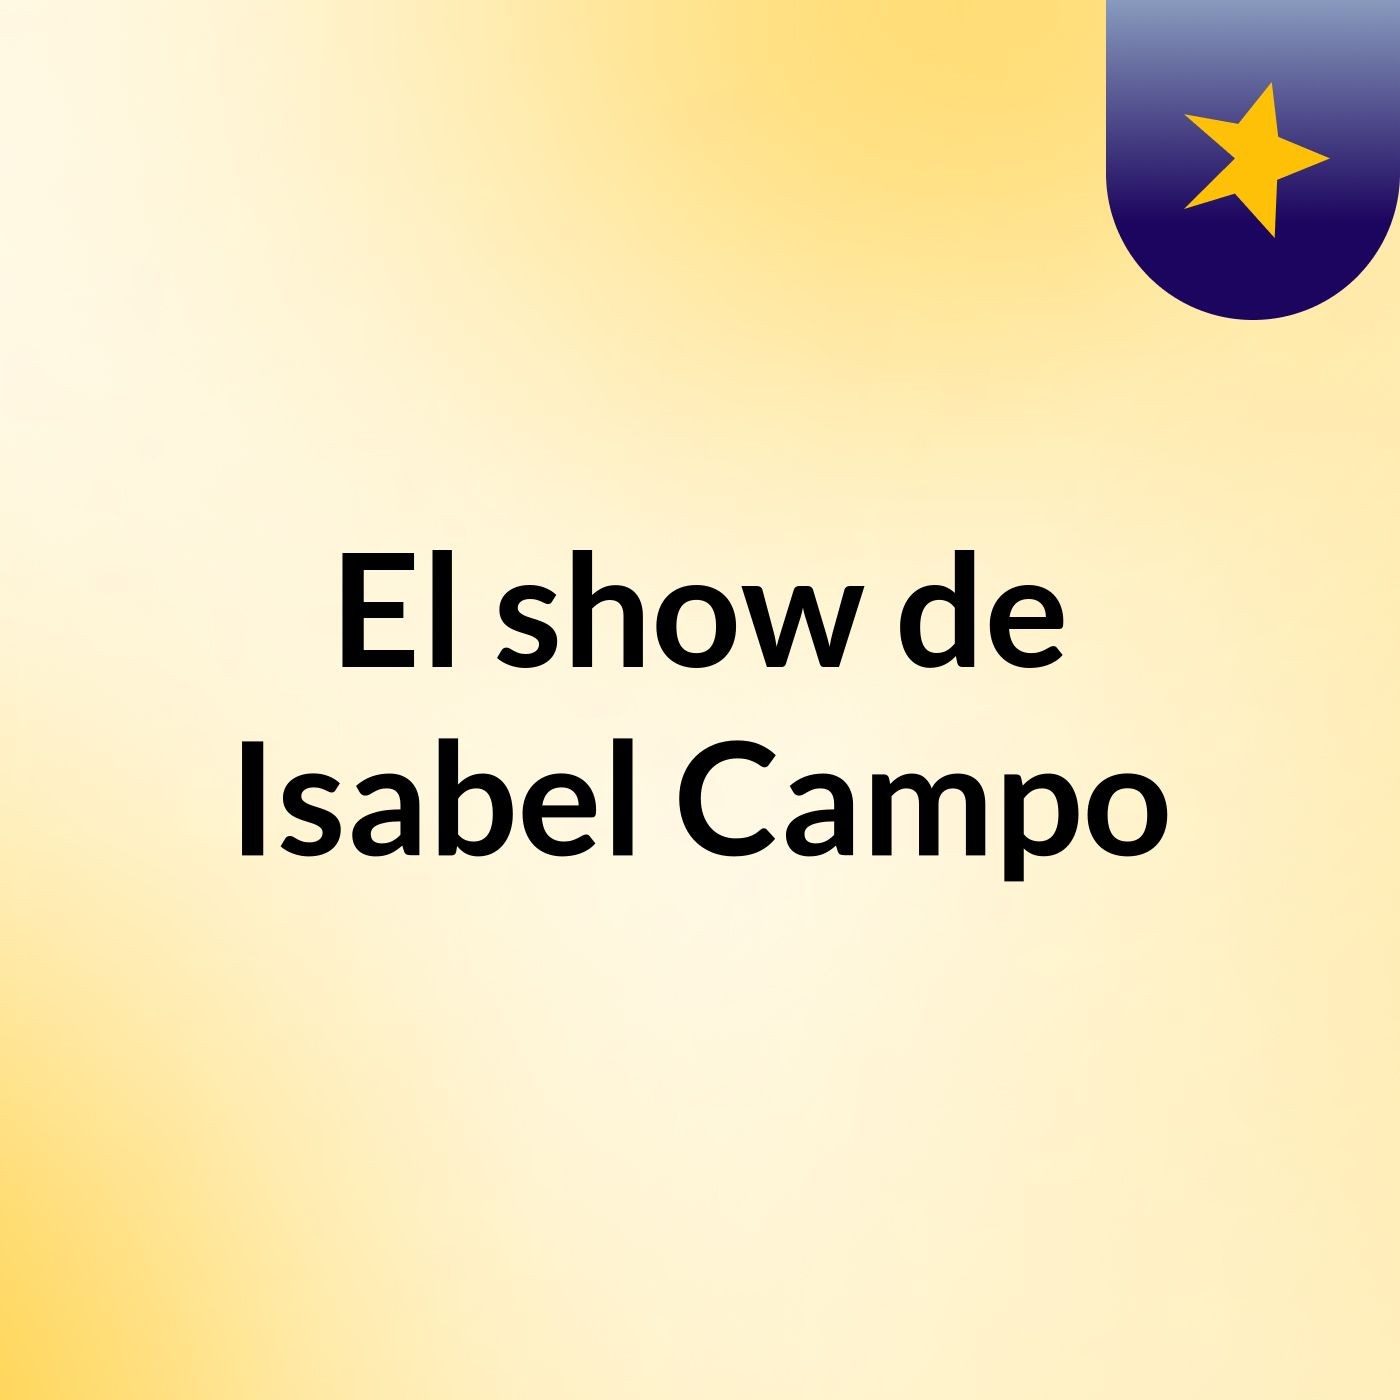 Episodio 2 - El show de Isabel Campo